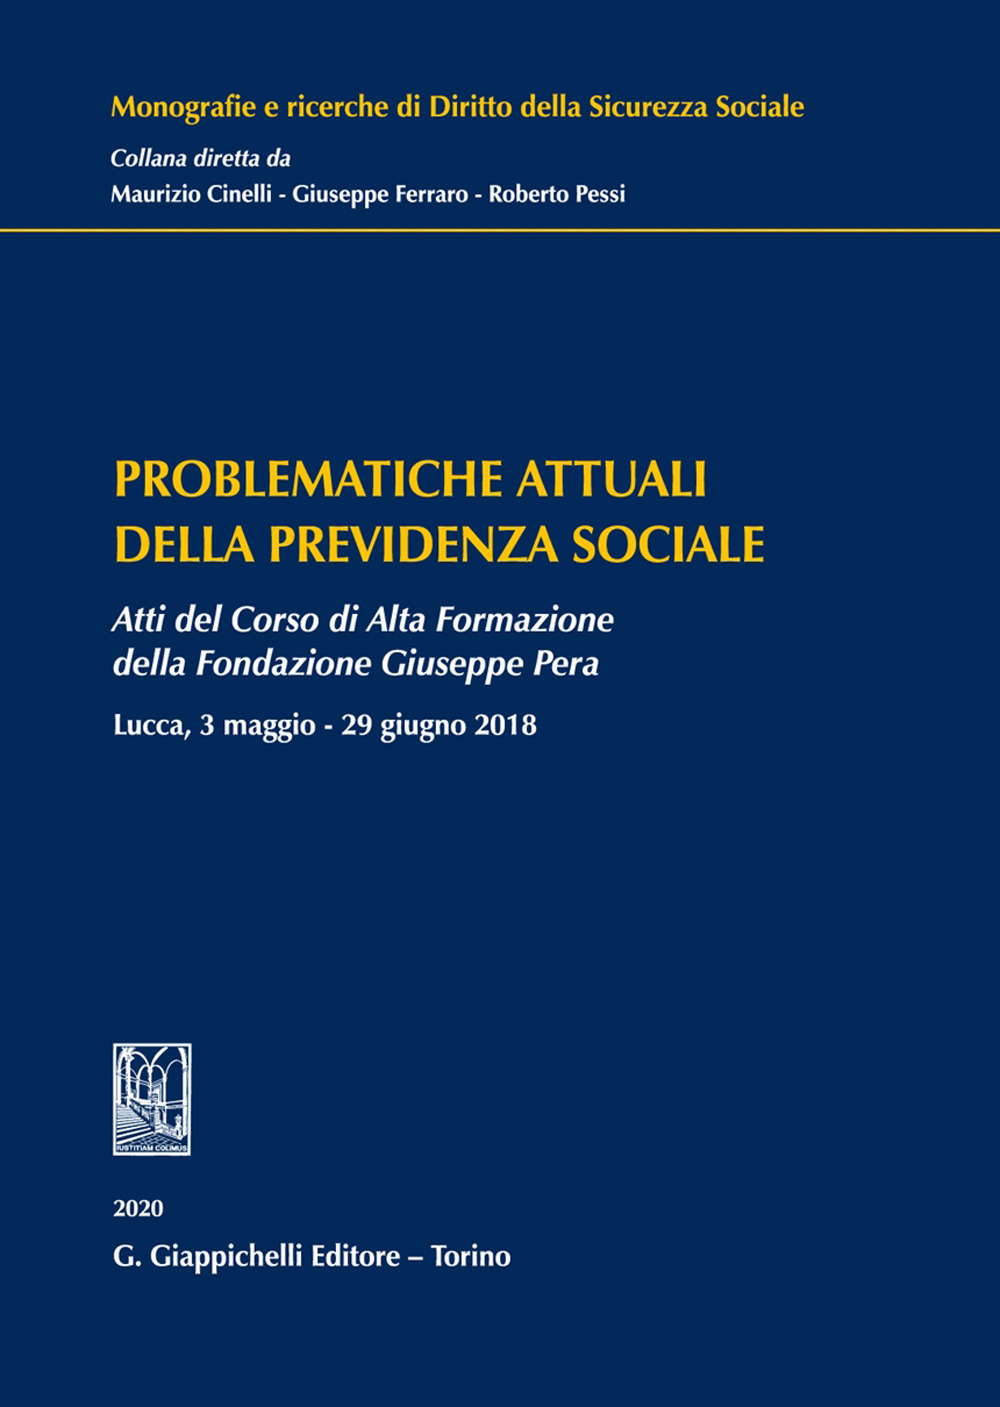 Problematiche attuali della previdenza sociale. Atti del Corso di Alta Formazione della Fondazione Giuseppe Pera (Lucca, 3 maggio-29 giugno 2018)